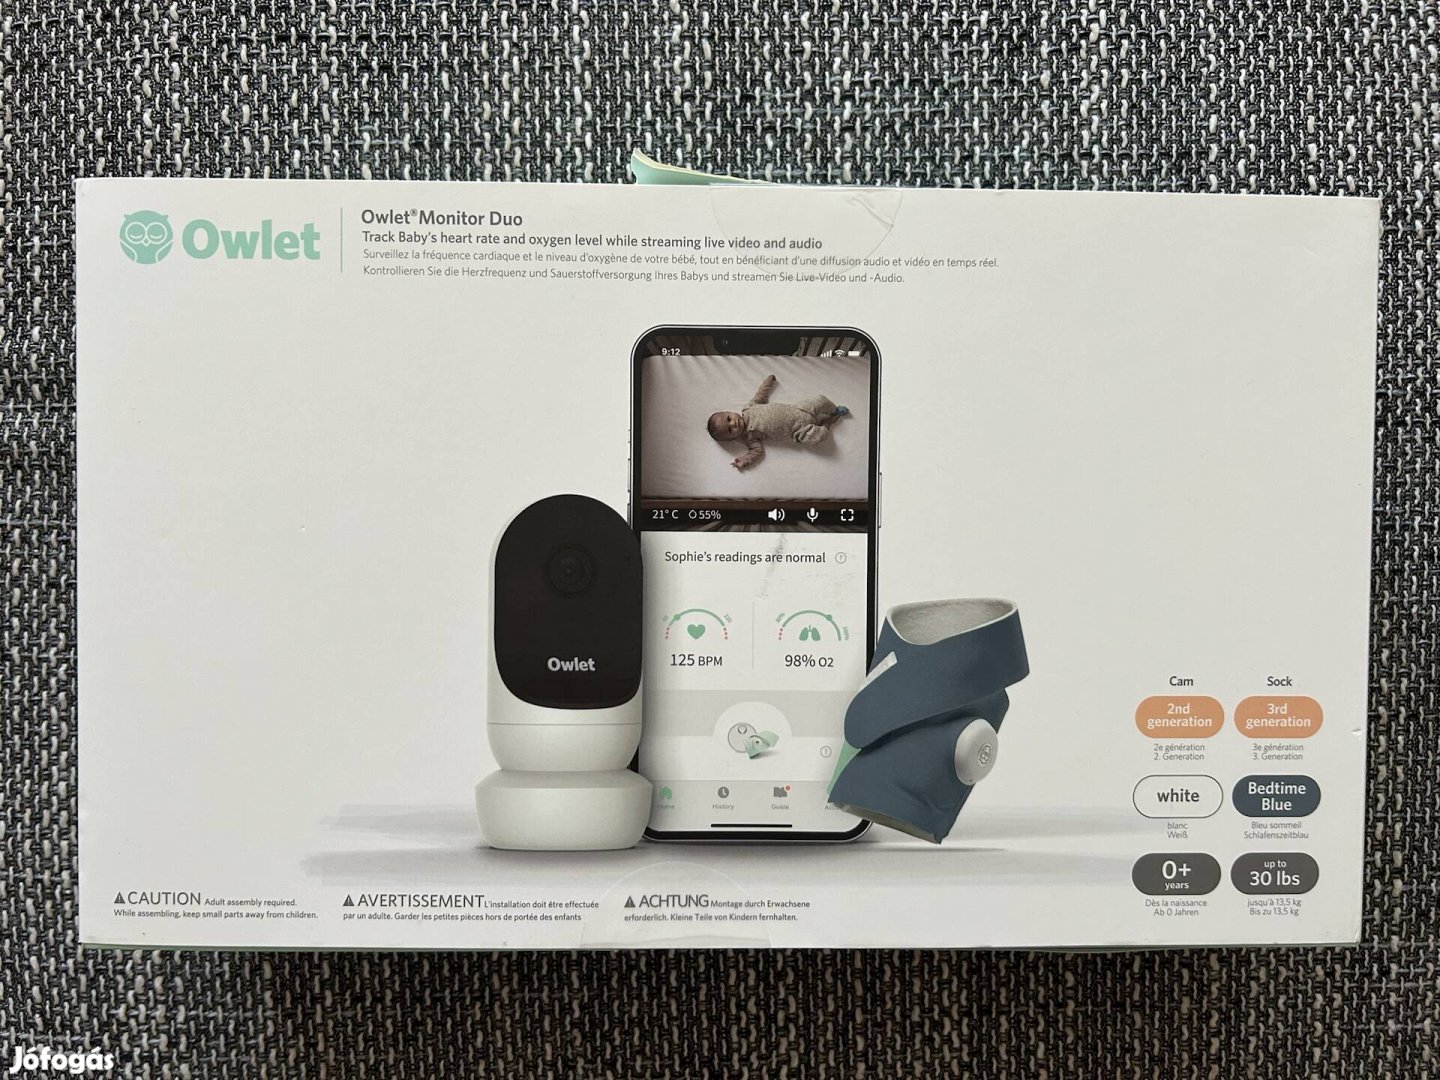 Owlet Smartsock 3 + Cam2